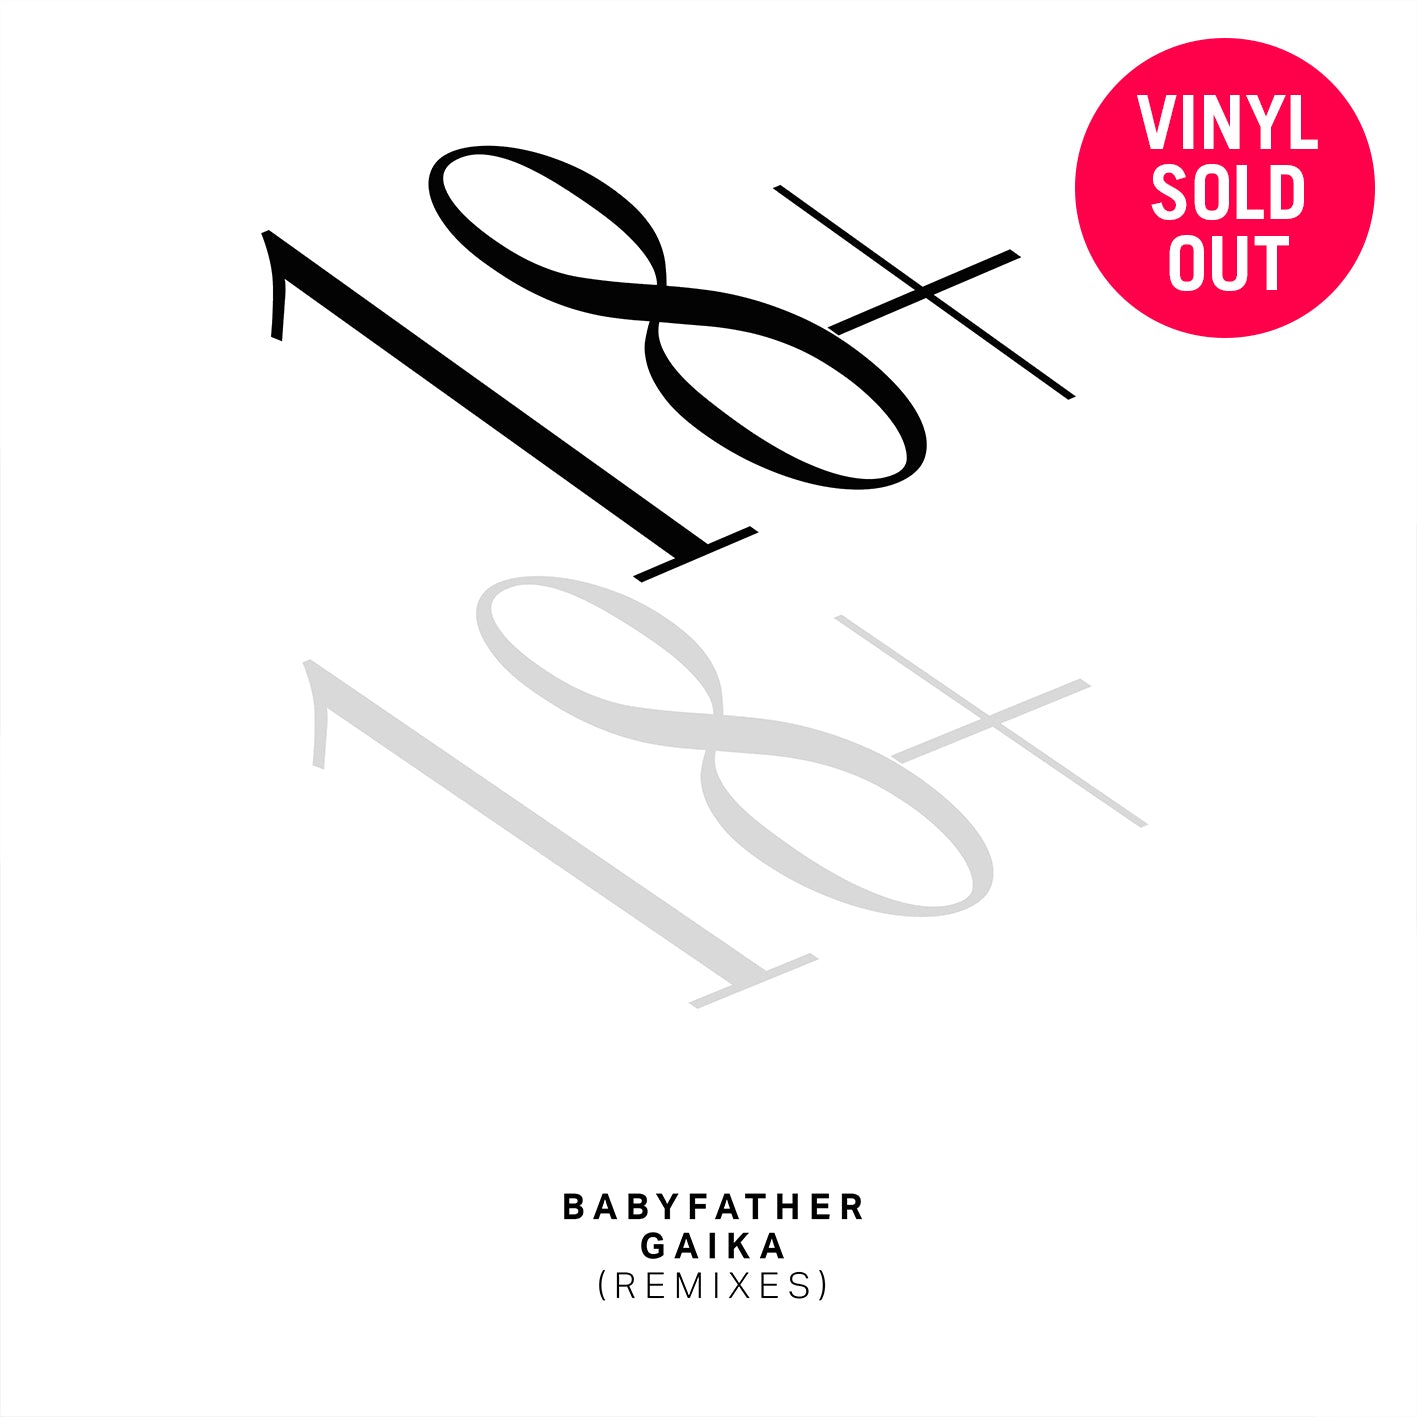 18+ - Babyfather / GAIKA Remixes Vinyl